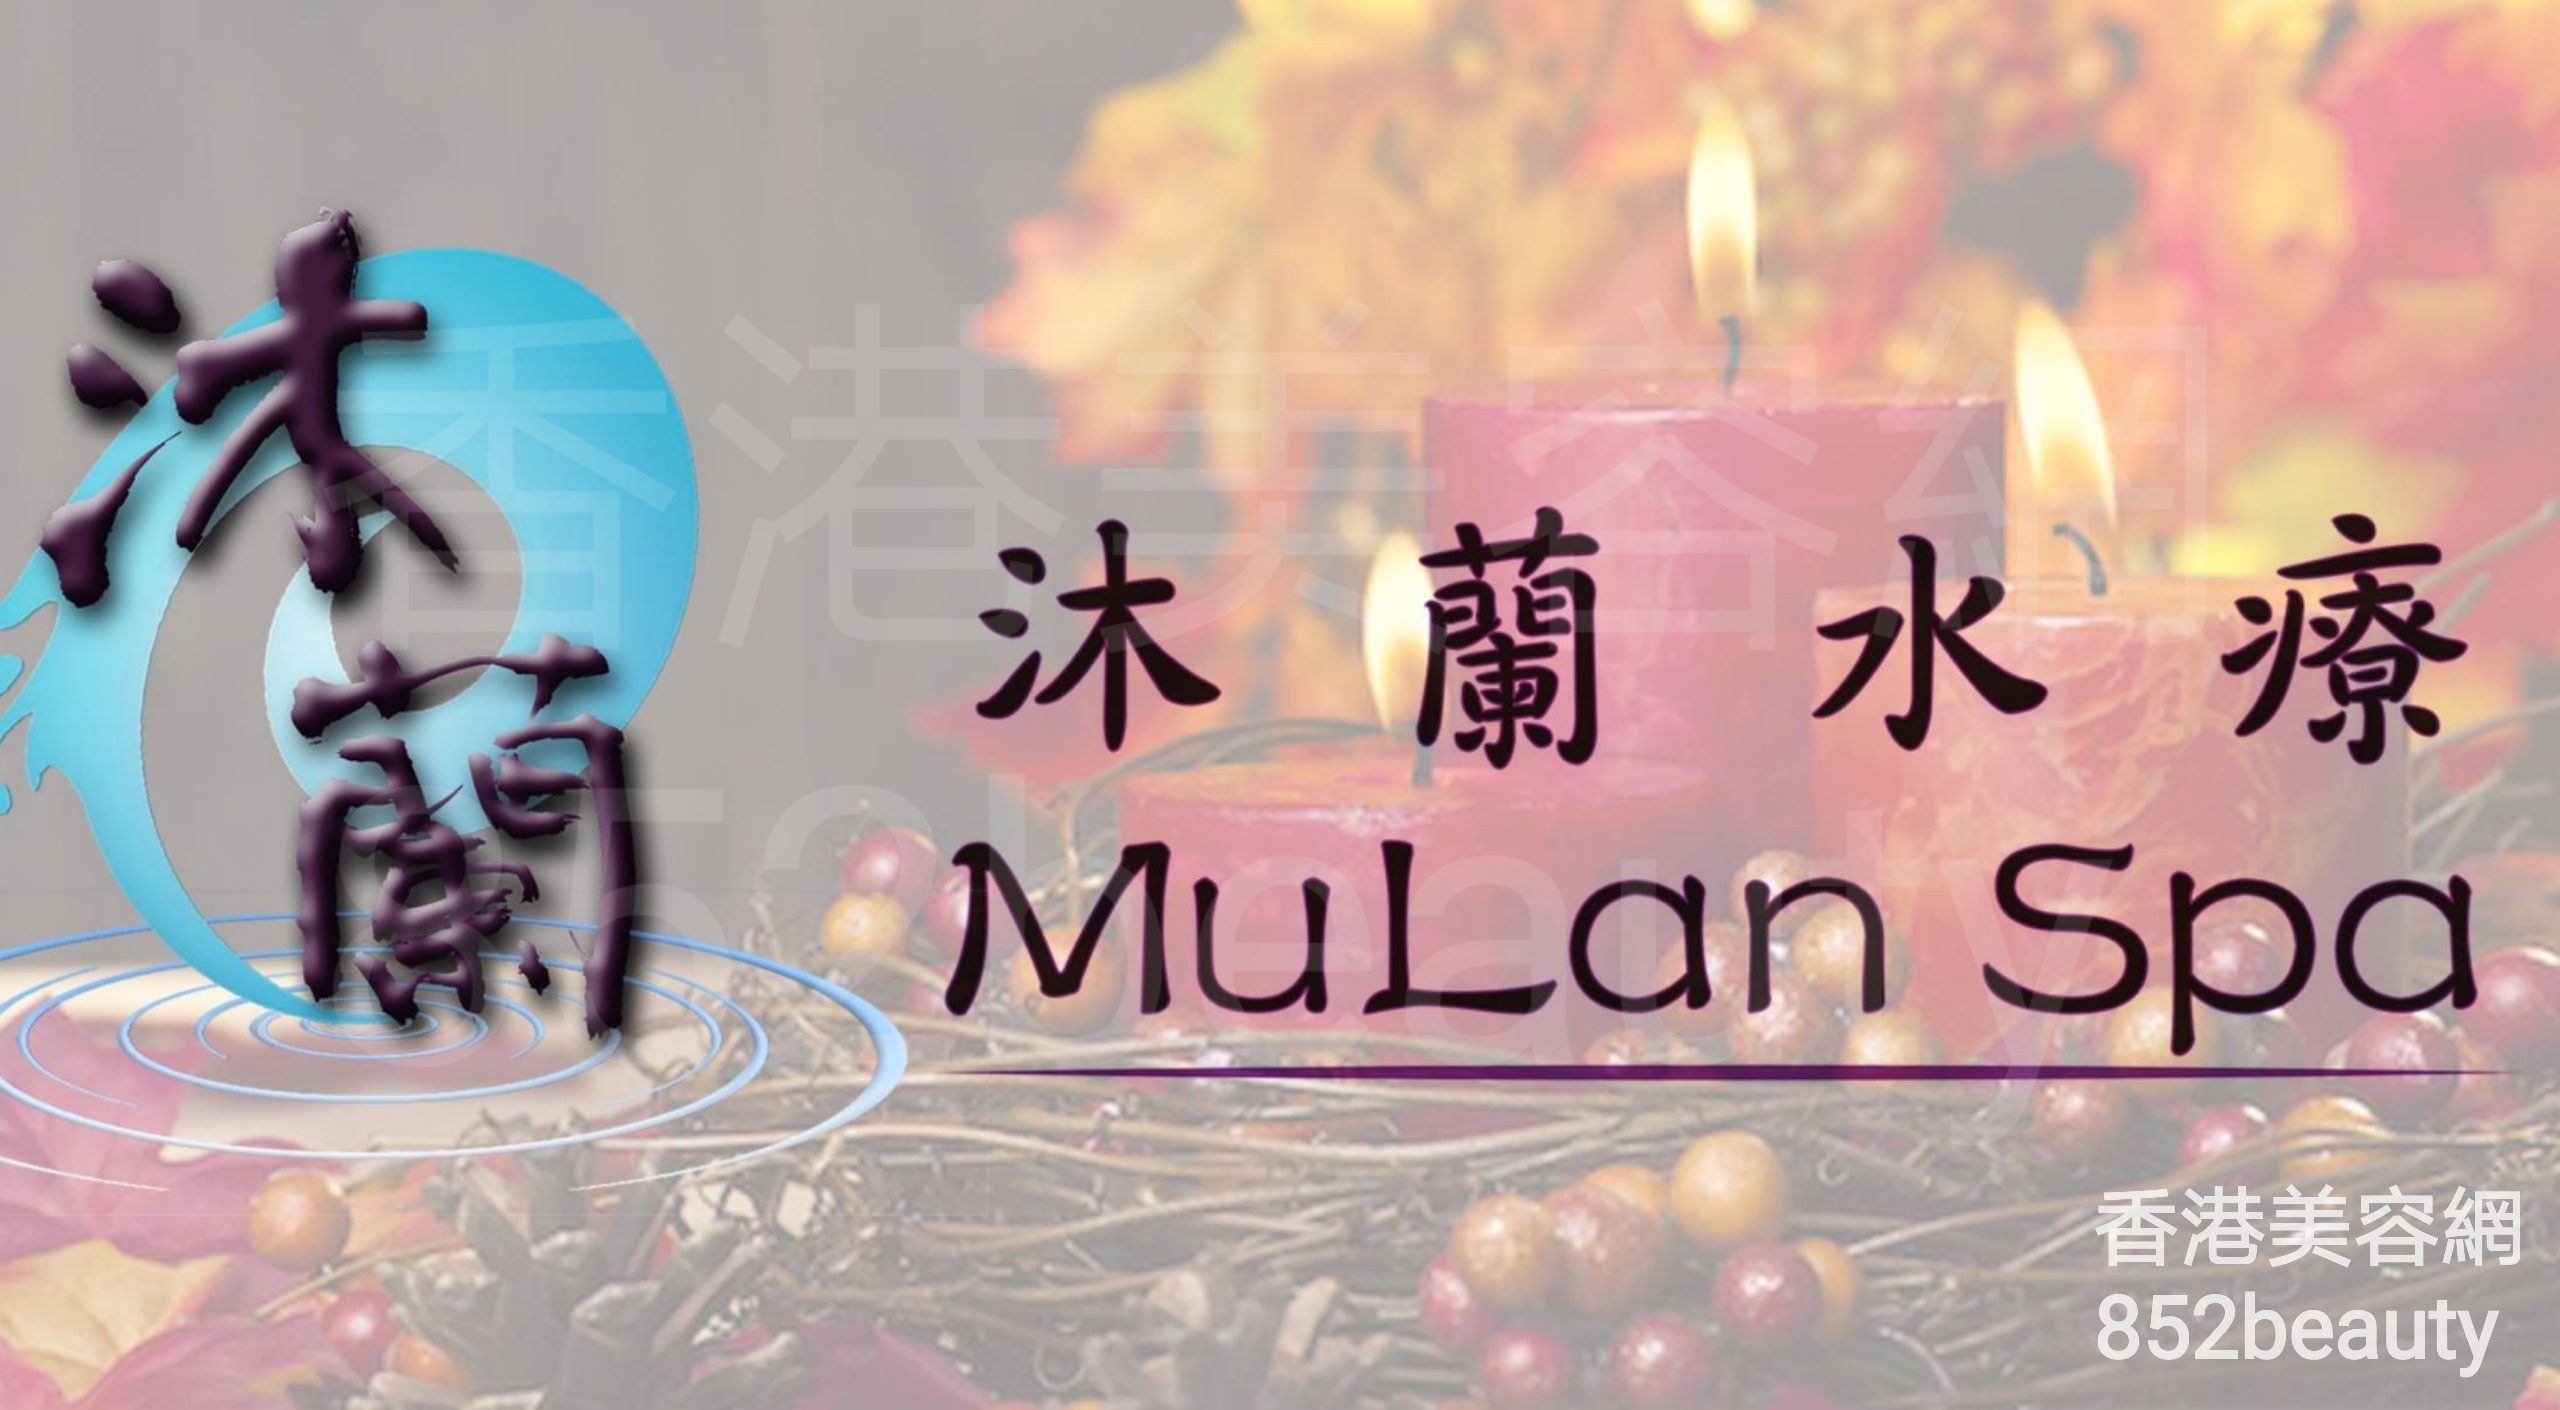 Massage/SPA: 沐蘭水療 - MuLan Spa (灣仔分店)